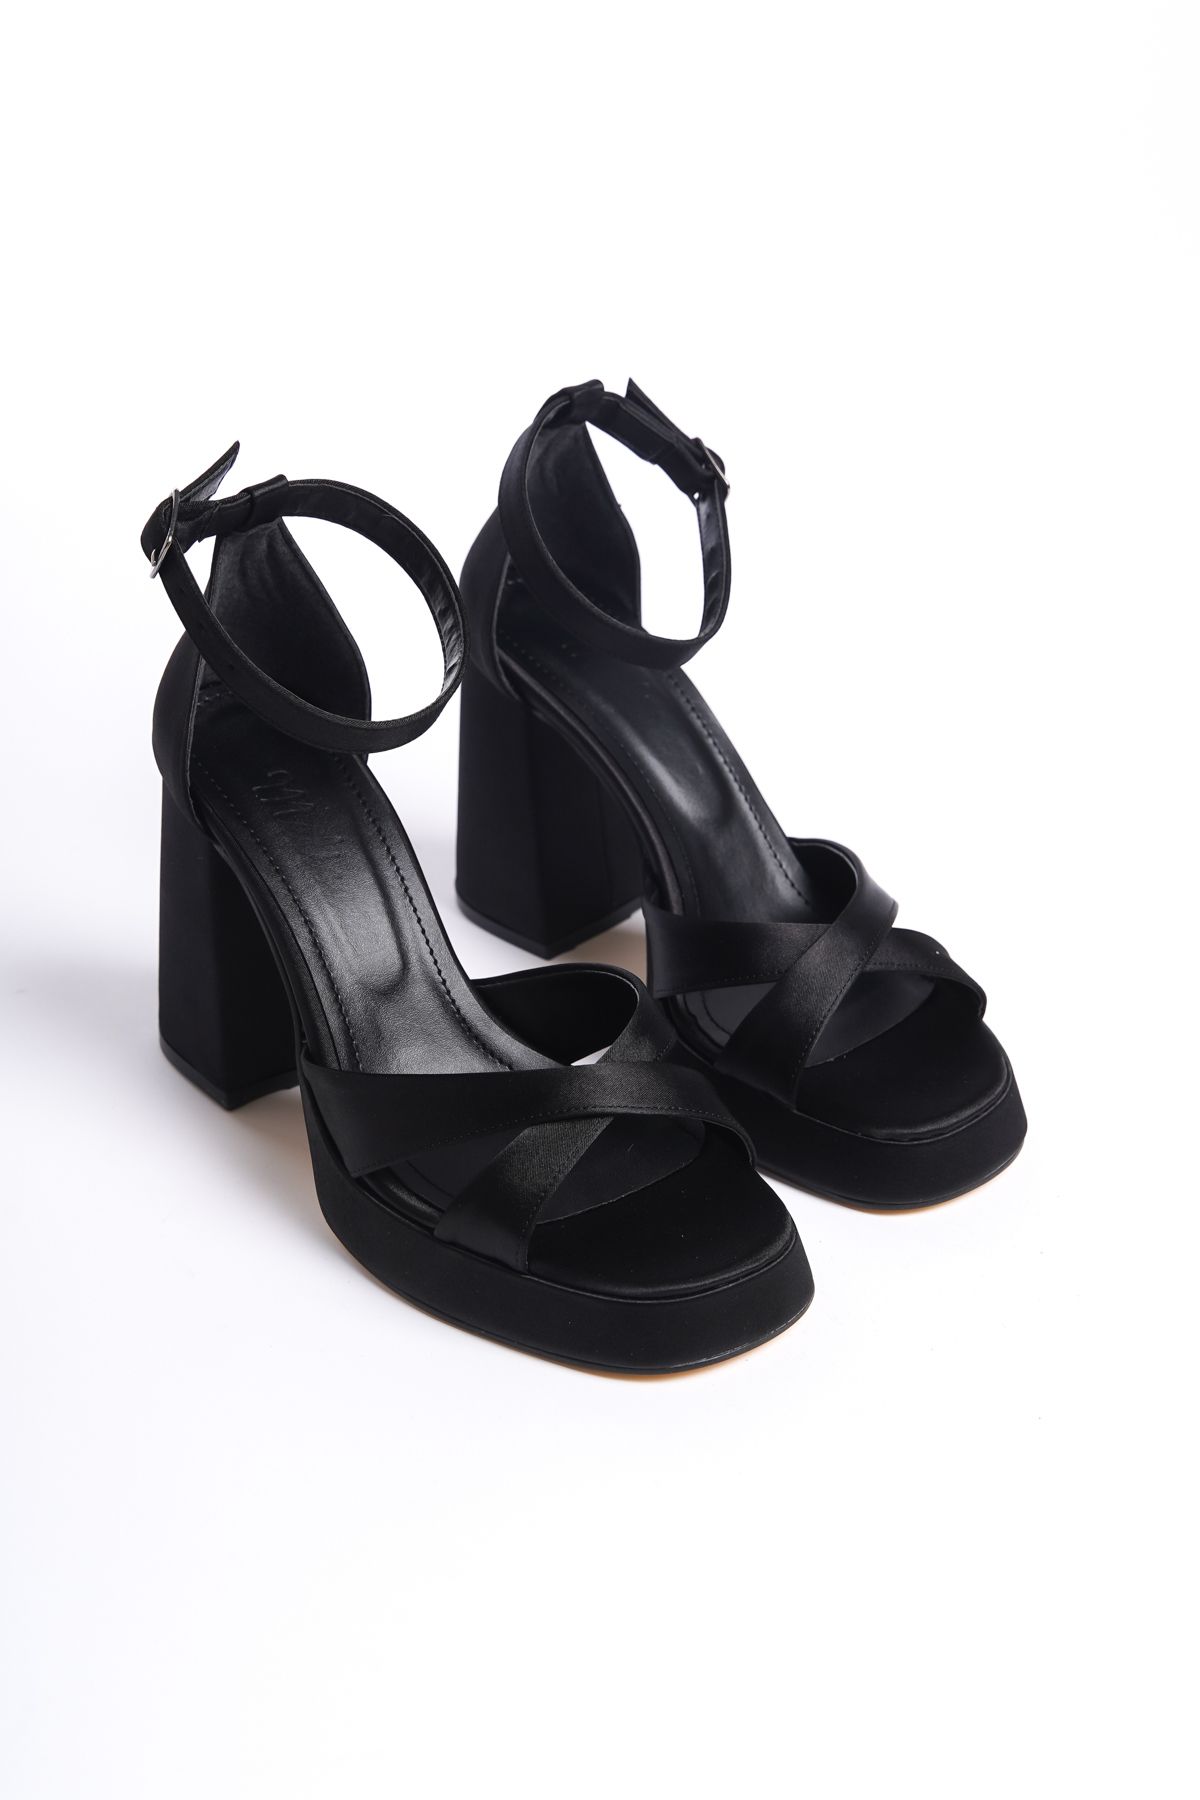 BAKGİY Siyah Saten Kadın Çapraz Platform Topuklu Ayakkabı Bg1115-119-0002